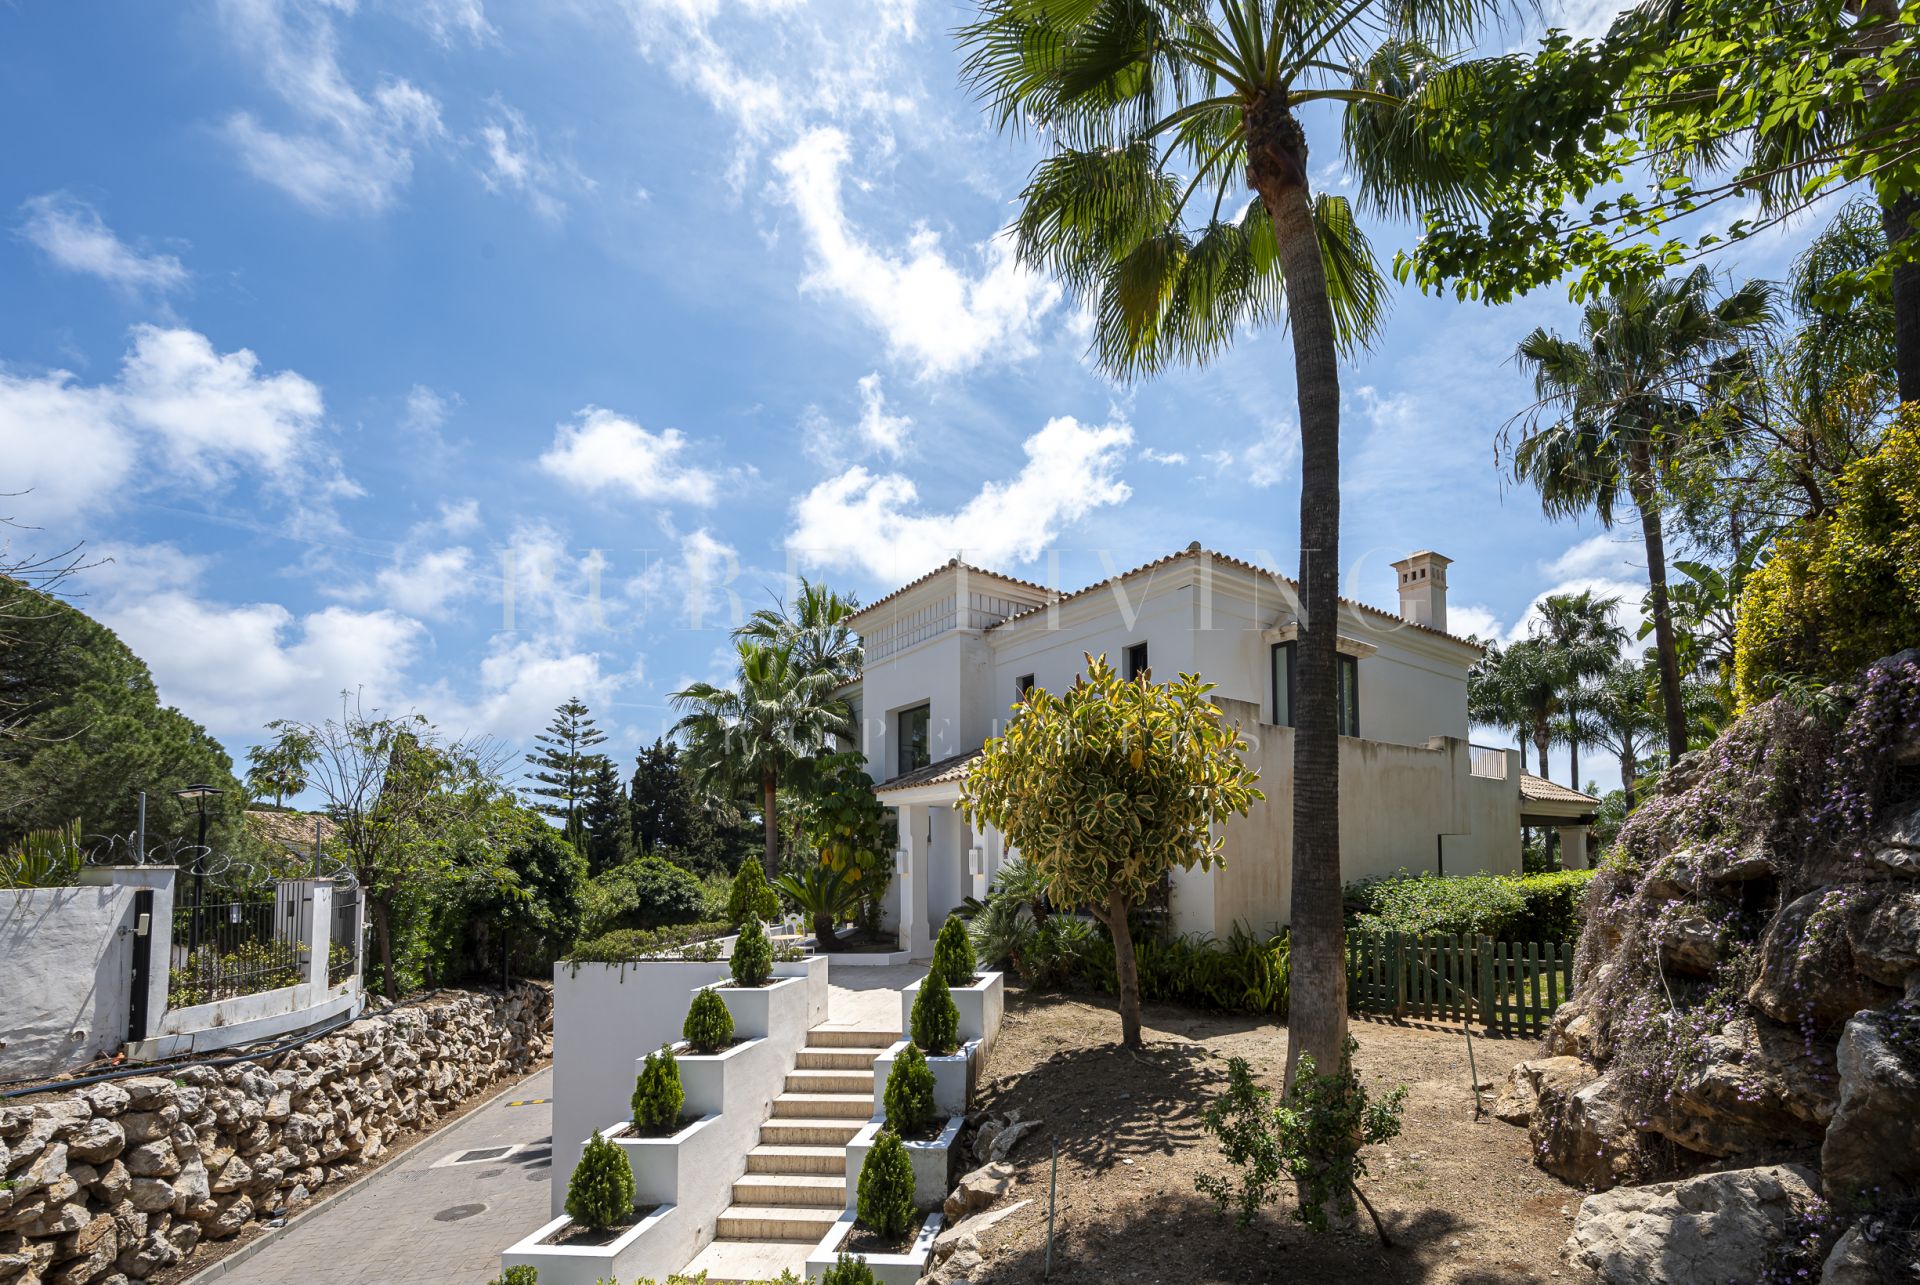 Villa exceptionnelle avec vue sur la mer, située dans une communauté fermée à Lomas de Magna sur le prestigieux Golden Mile.